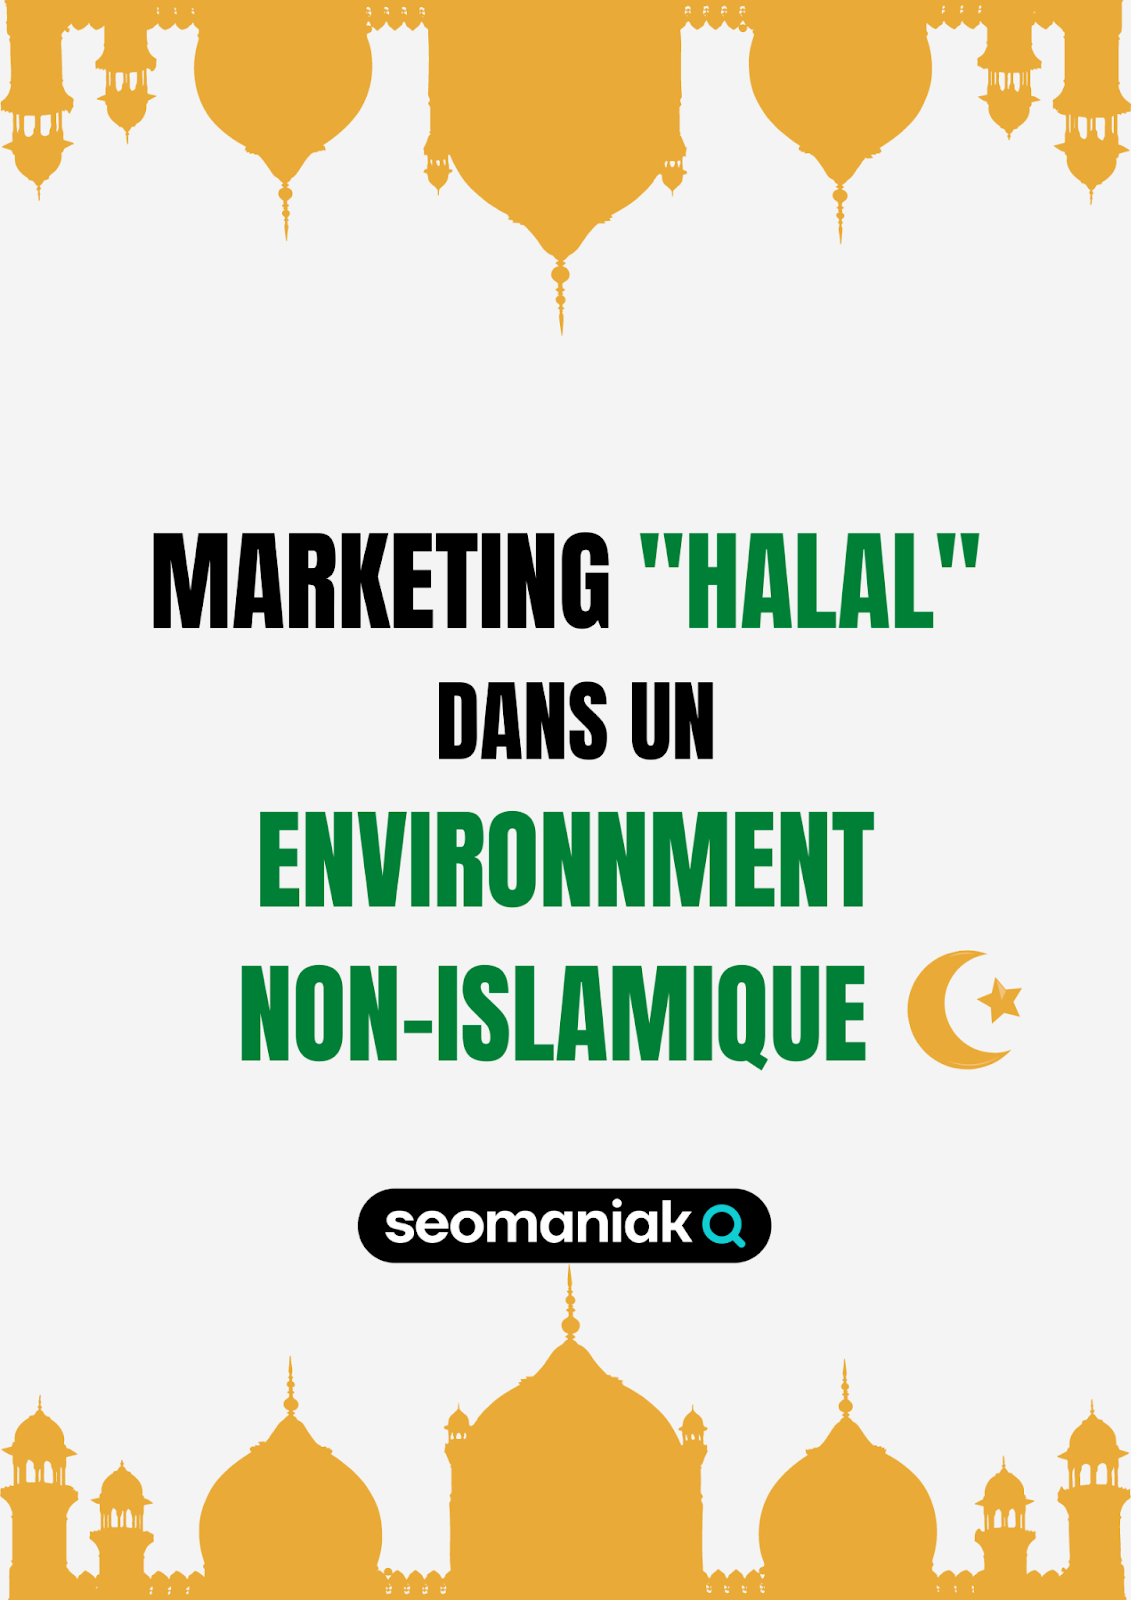 Le marketing halal dans un environnement non-islamique